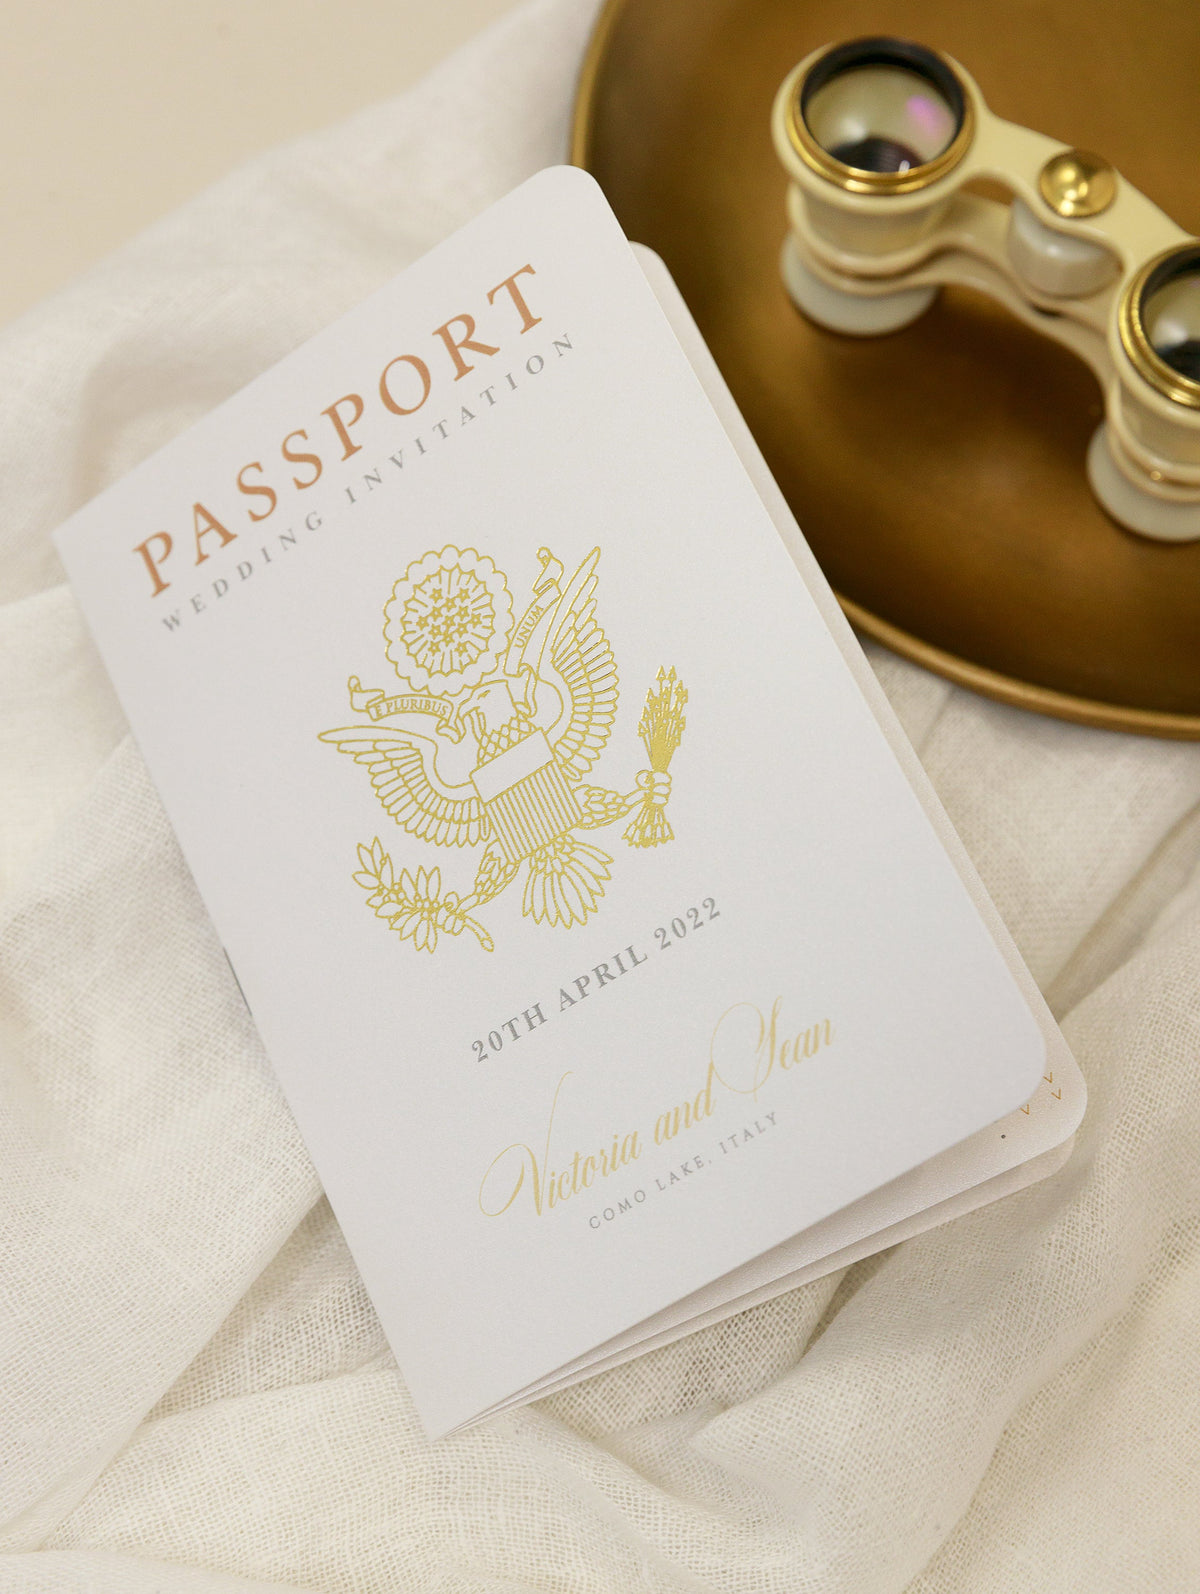 Invitación de boda con pasaporte dorado: avión grabado de lujo en pasaporte Plexi dorado y boda de destino con lámina de oro real